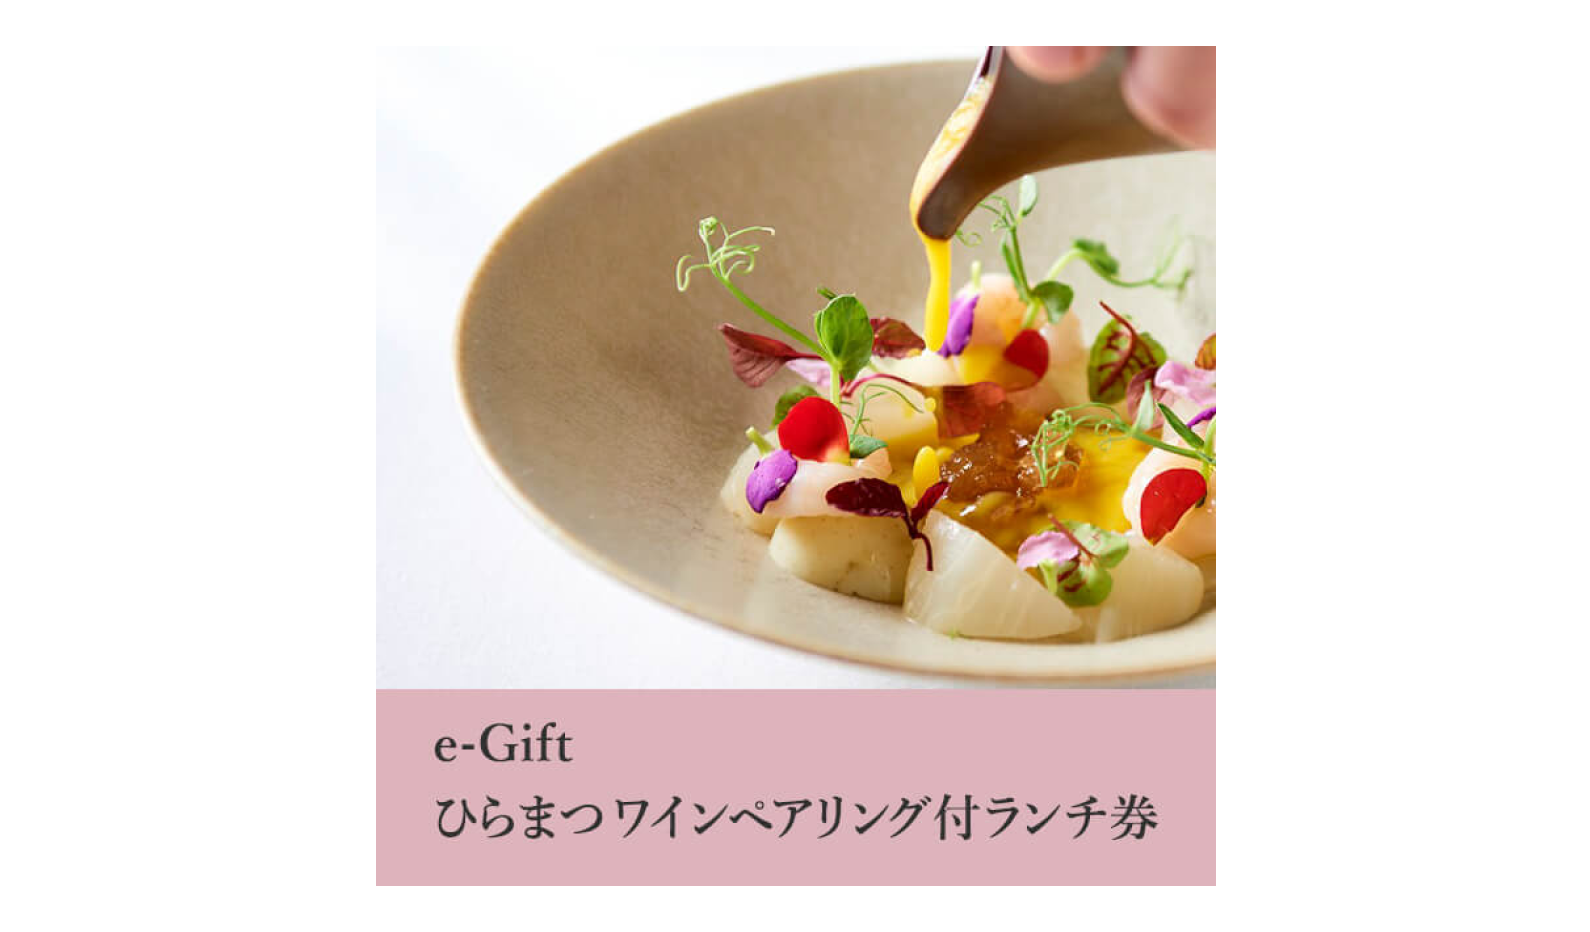 11.e-Gift ひらまつワインペアリング付ランチ券